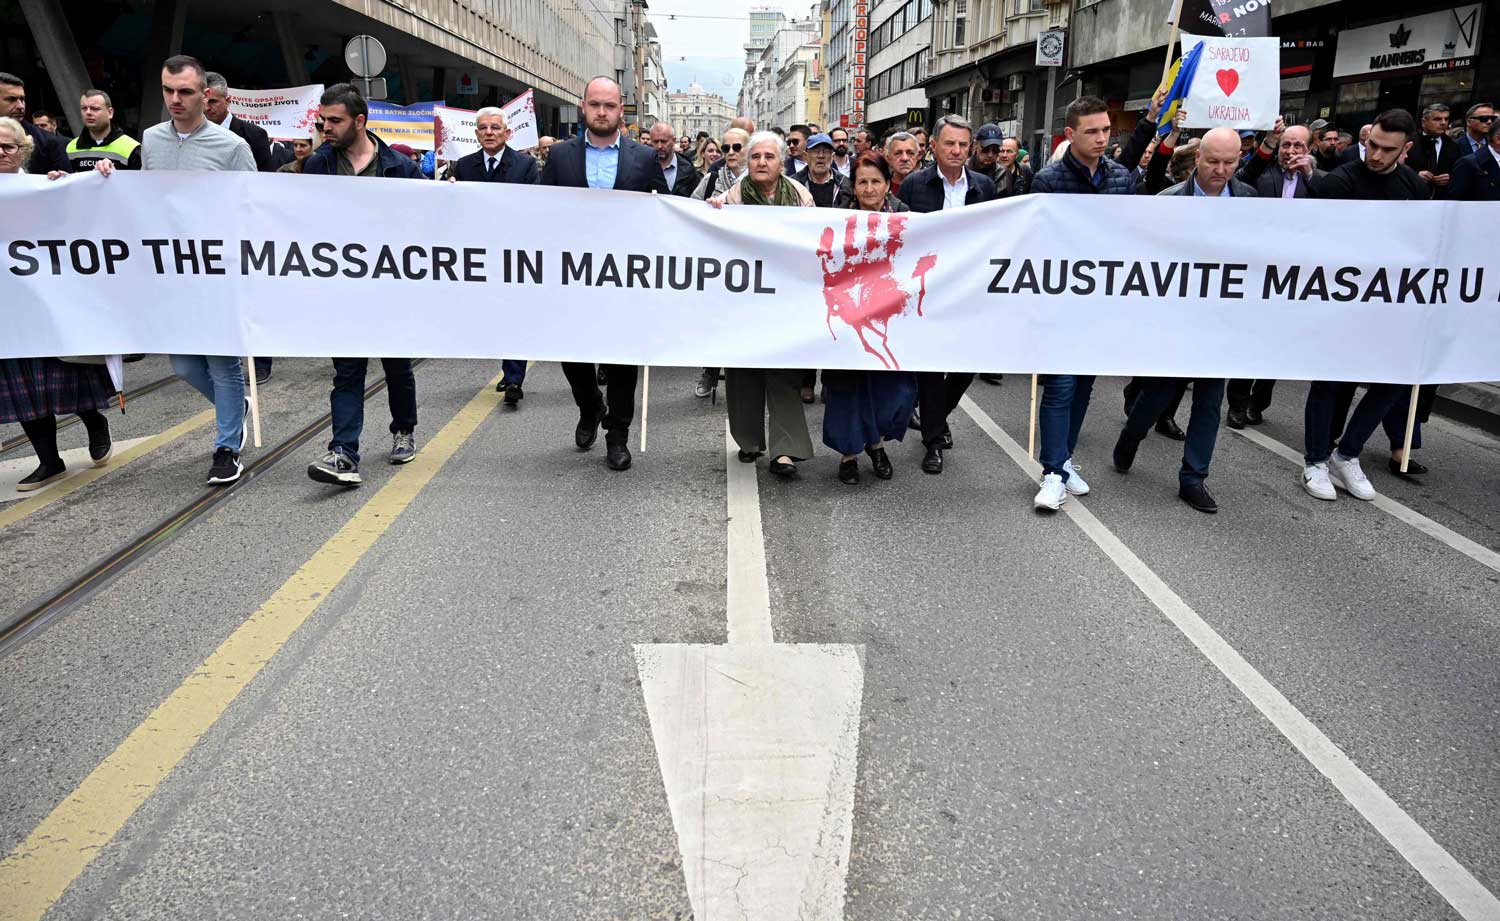 Mielenosoittajat kävelevät kadulla kädessään banderolli, jossa lukee "Stop the massacre in Mariupol".